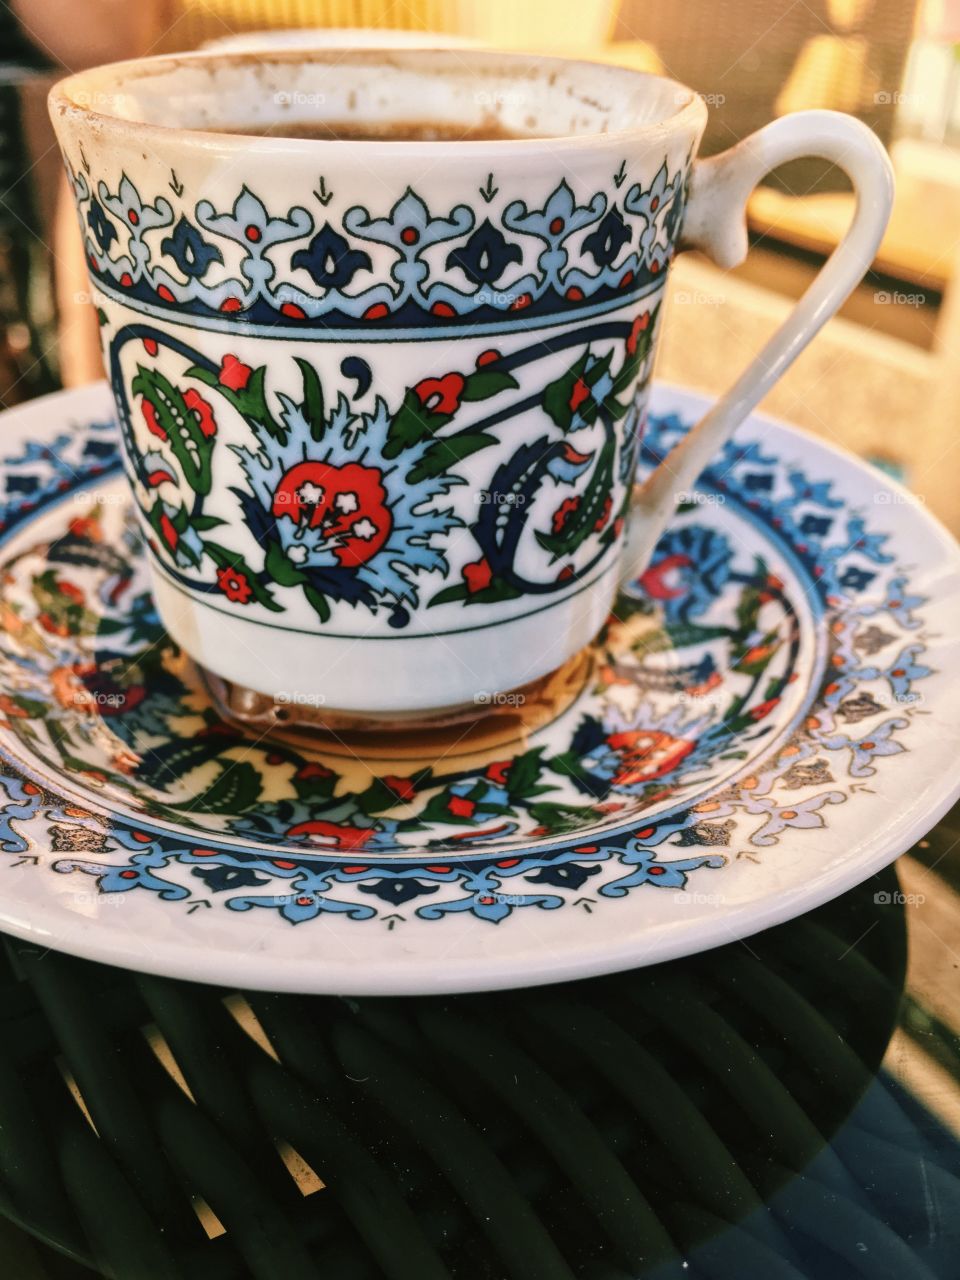 Turkish coffee in a beautiful cup.